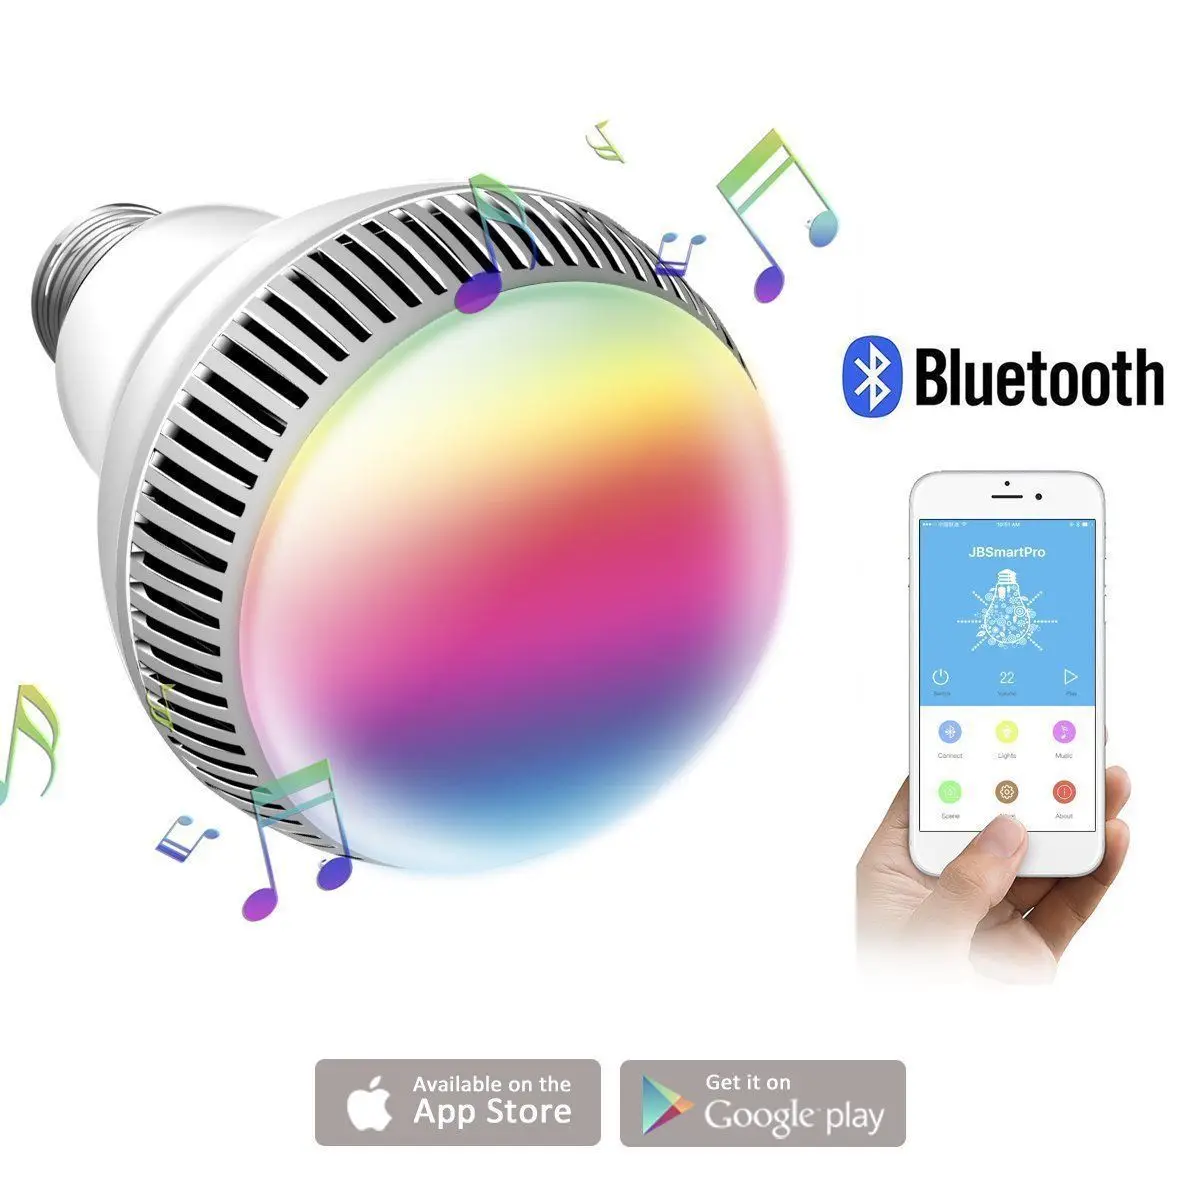 Лампочка Bluetooth Smart Light E27 лампа 9 Вт умный светодиодный свет лампы Bluetooth Управление RGB Цвет музыка Динамик таймер